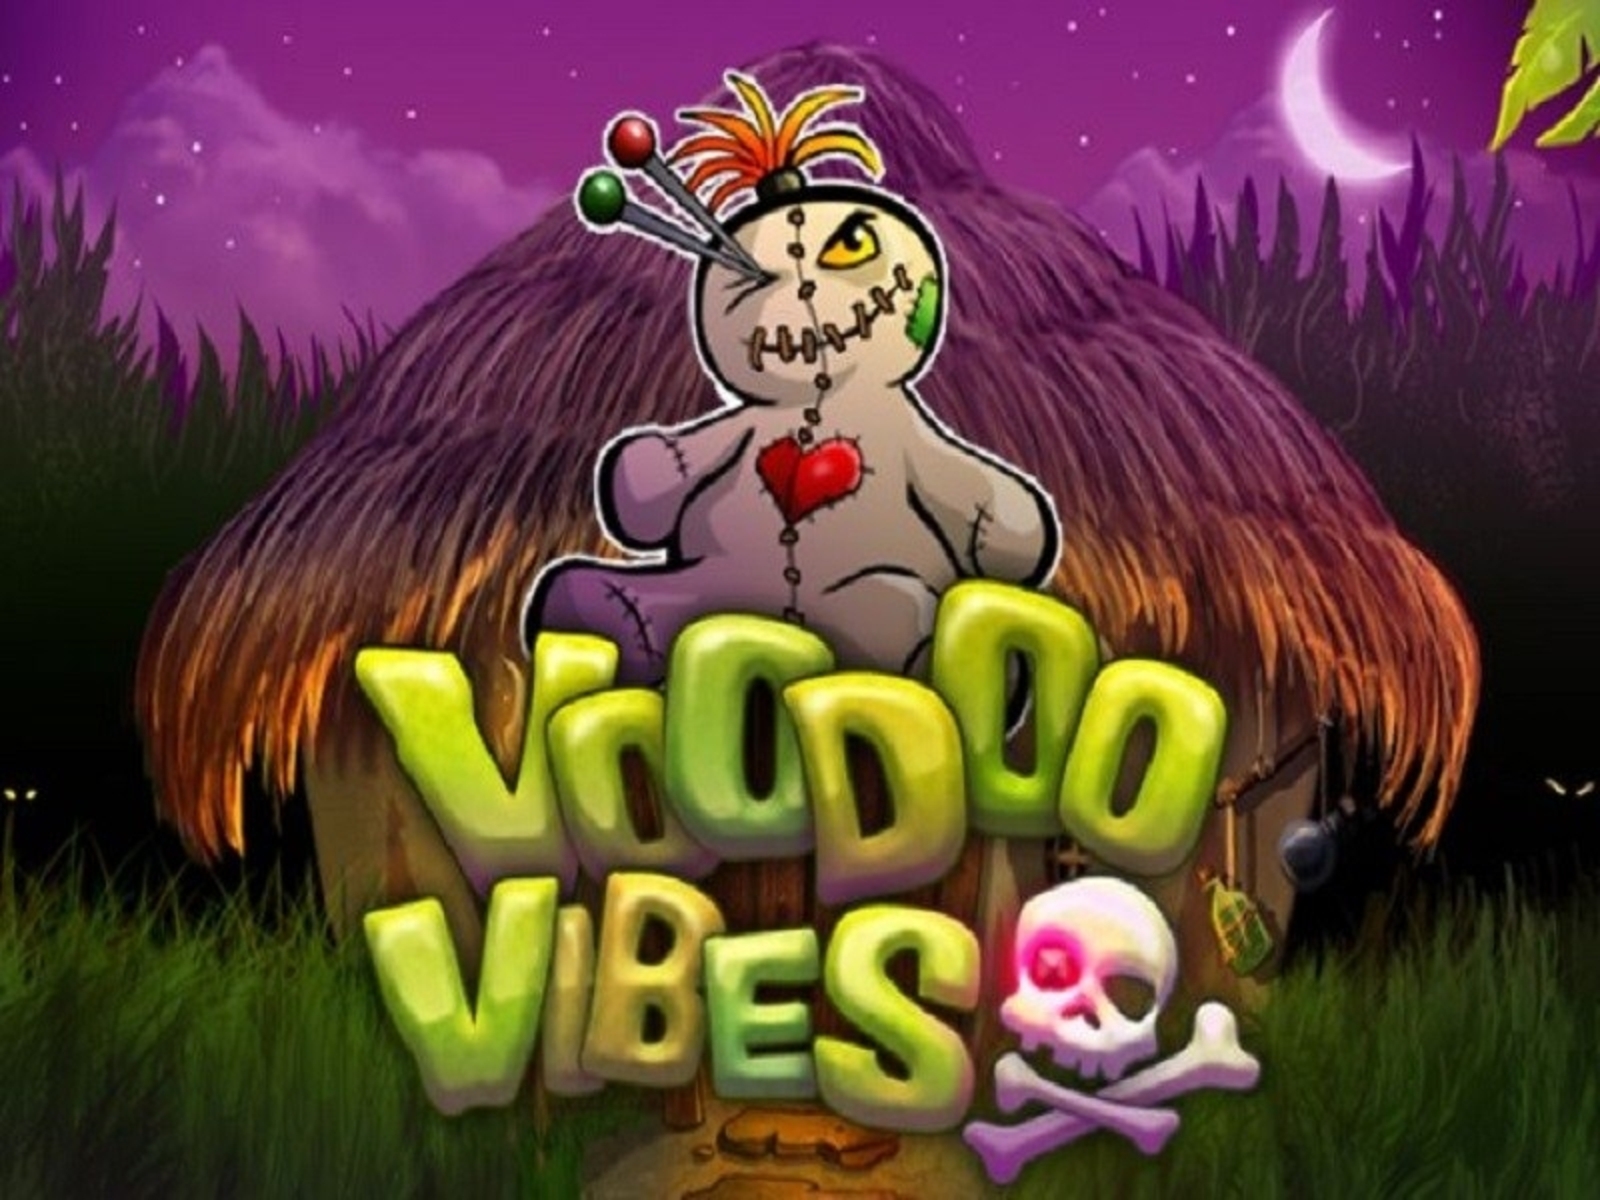 Voodoo Vibes demo